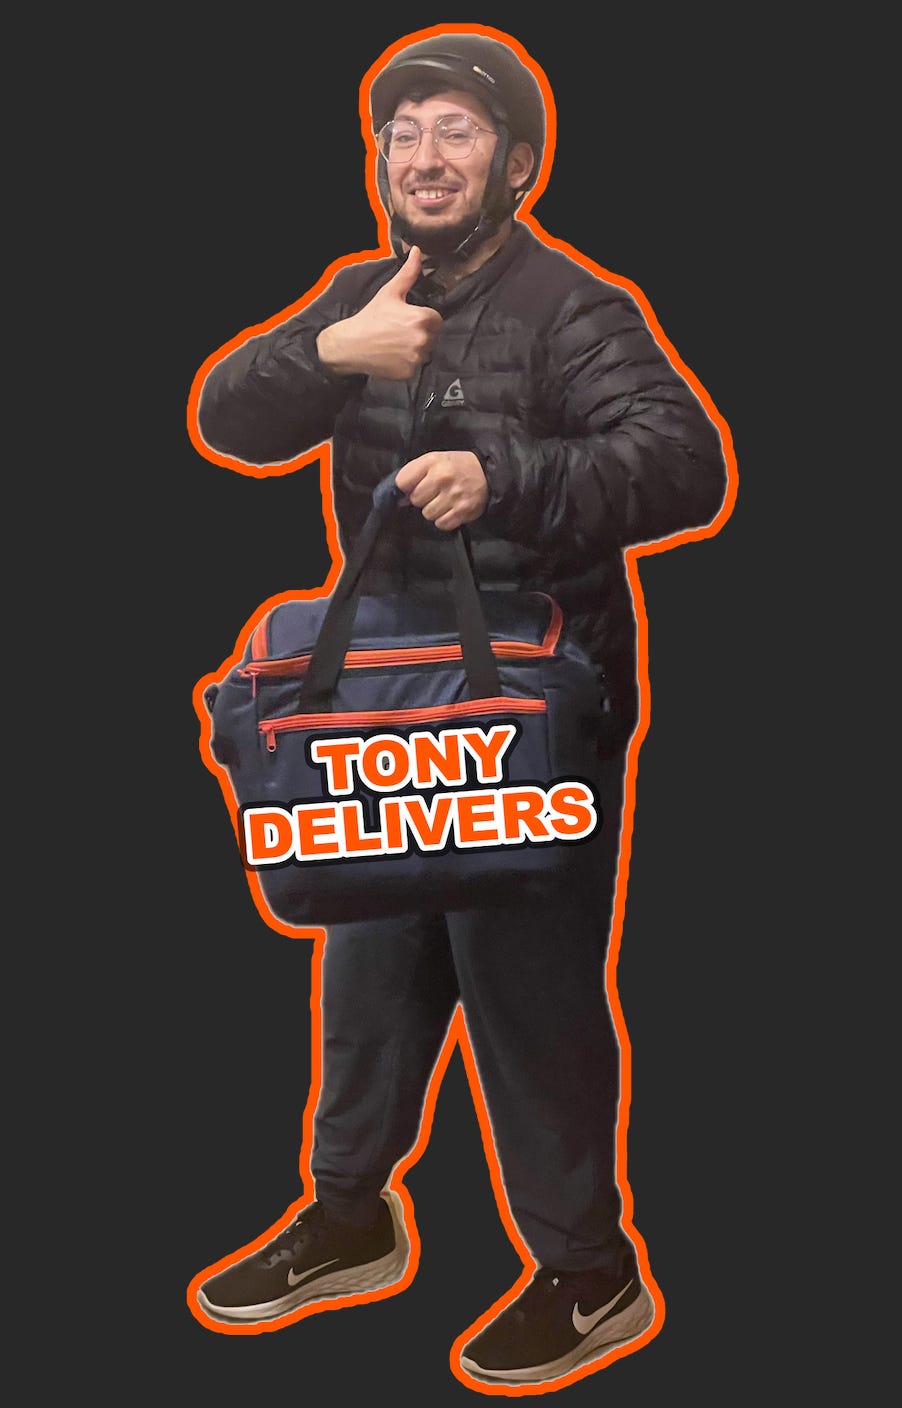 Tony Illes von Tony Delivers posiert mit einem Lächeln und einem Daumen-hoch-Zeichen, während er eine Brille, einen schwarzen Fahrradhelm, eine schwarze Puffjacke, schwarze Hosen, schwarz-weiße Nike-Turnschuhe und eine schwarz-orangefarbene Tasche trägt.  Die Worte „Tony Delivers“ erscheinen in oranger Schrift über dem Bild und sind von einer orangefarbenen Umrandung umgeben.